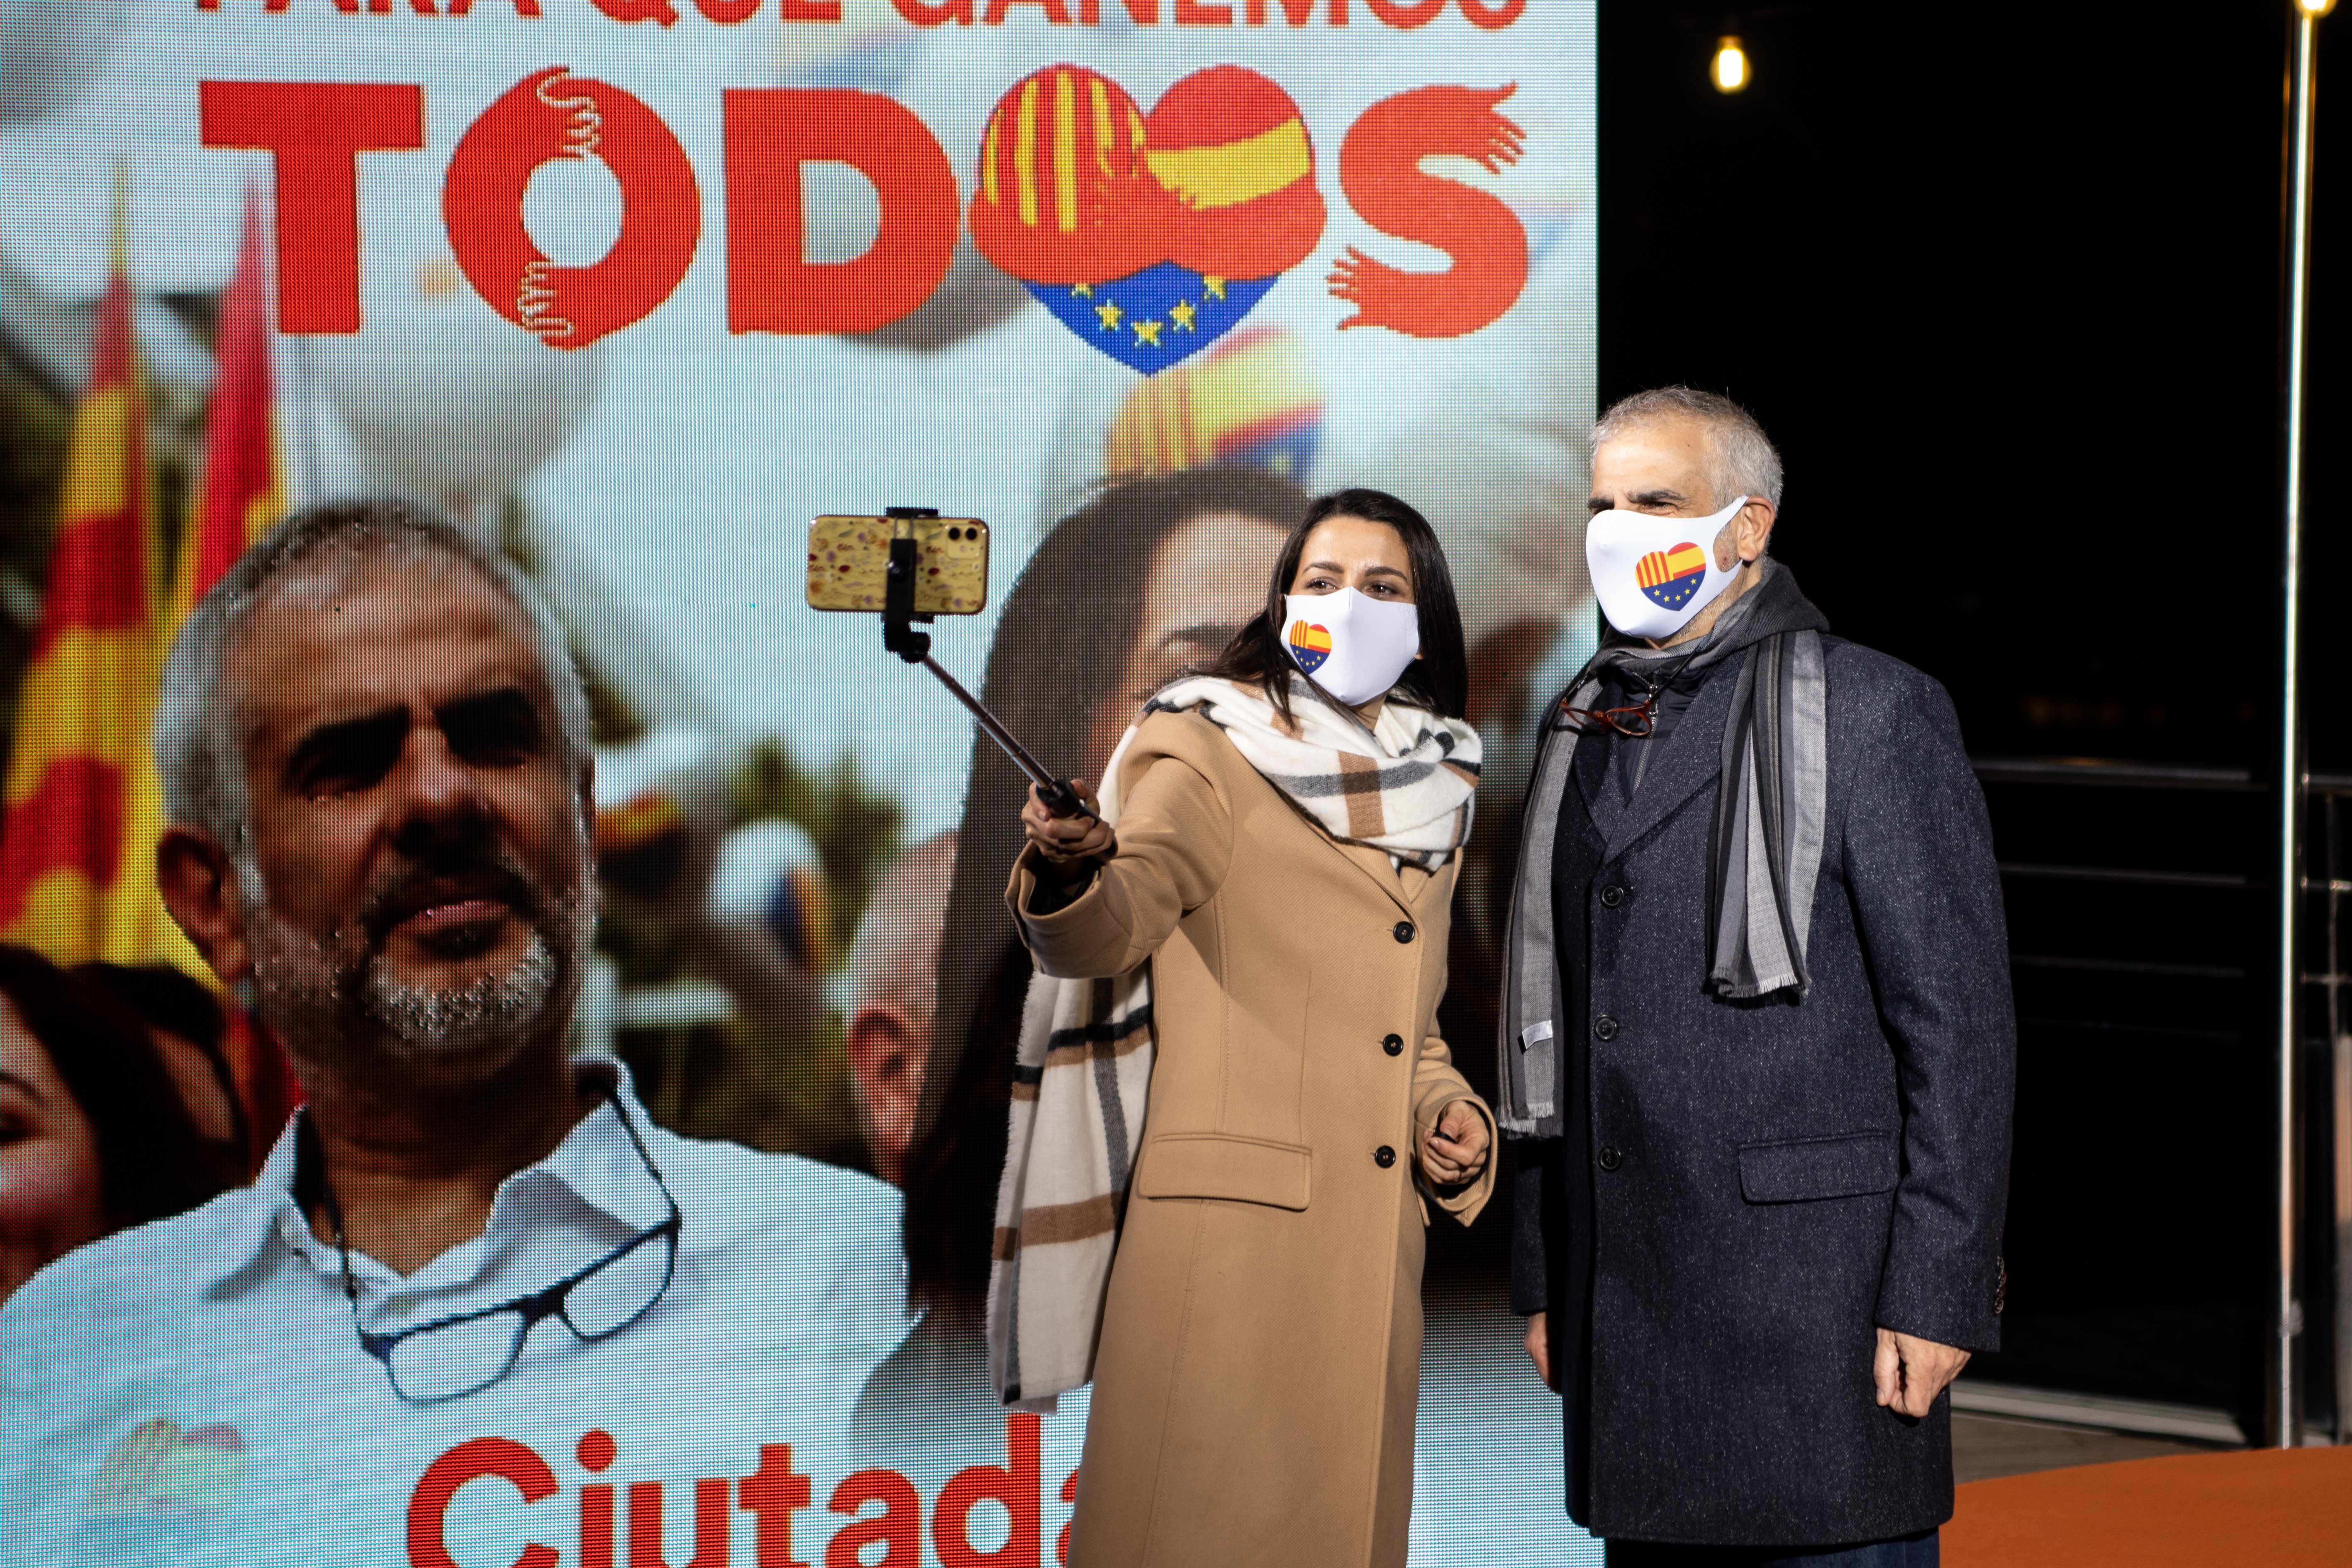 La refundació de Ciutadans no afectarà Catalunya: "Aquí la marca és potent"